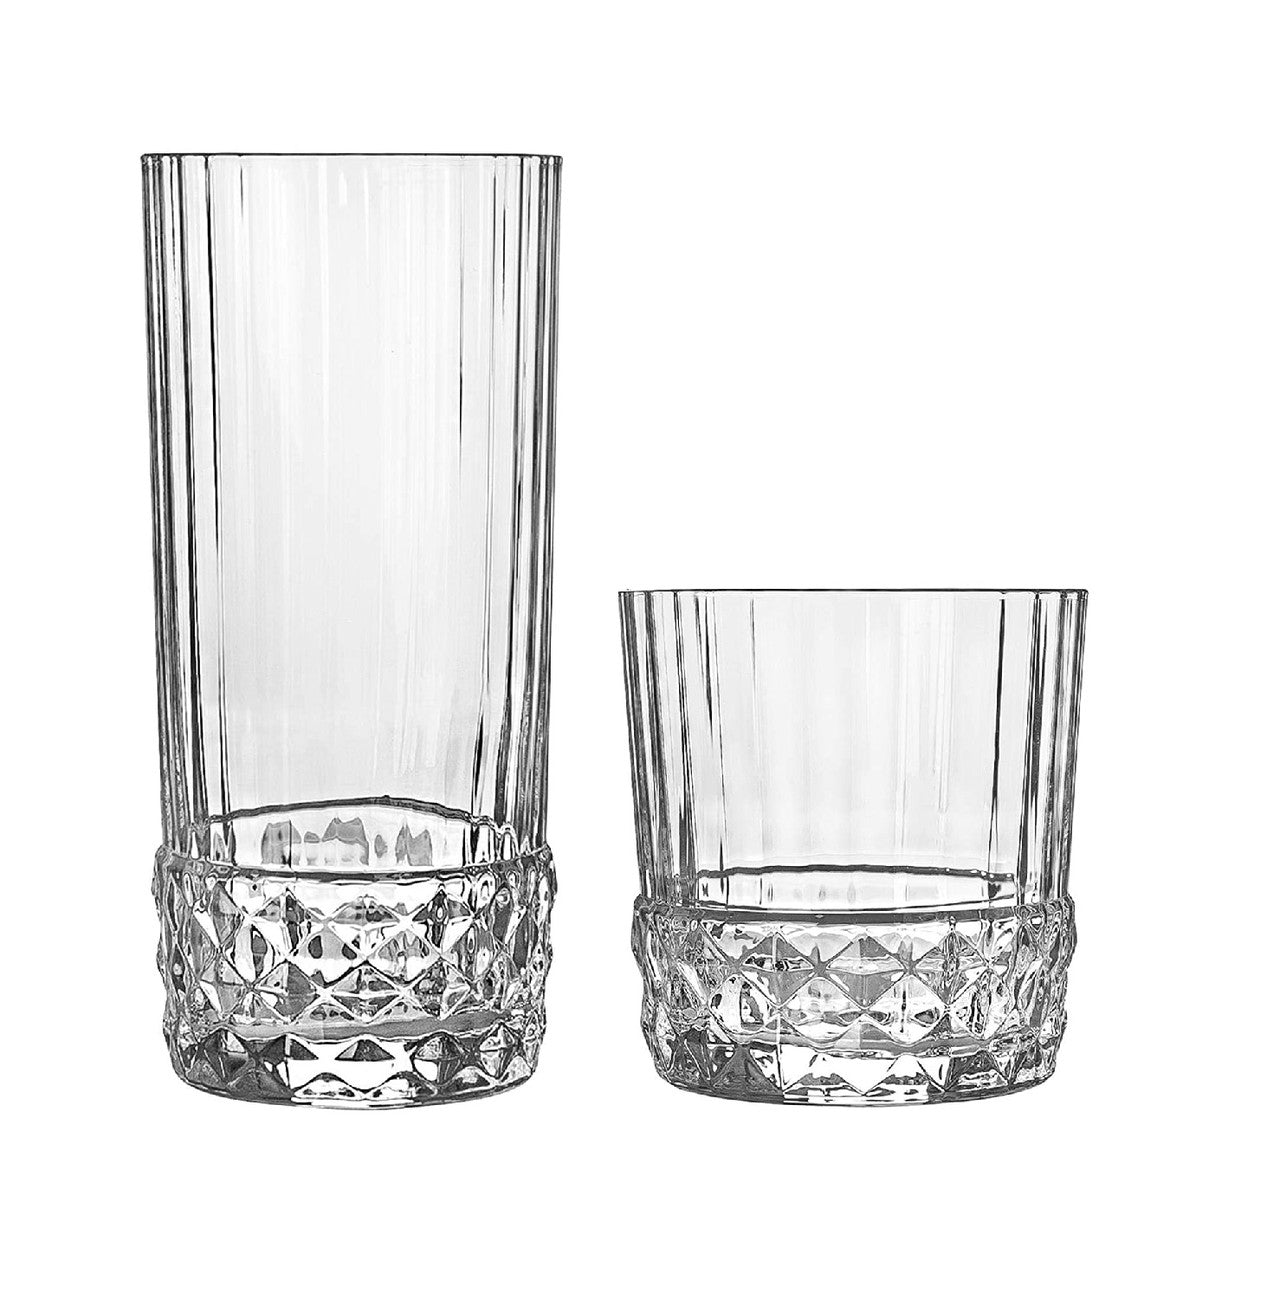 Longdrinkglas Americas ´20s 480ml Trinkglas Becher Retro Vintage Kristallglas